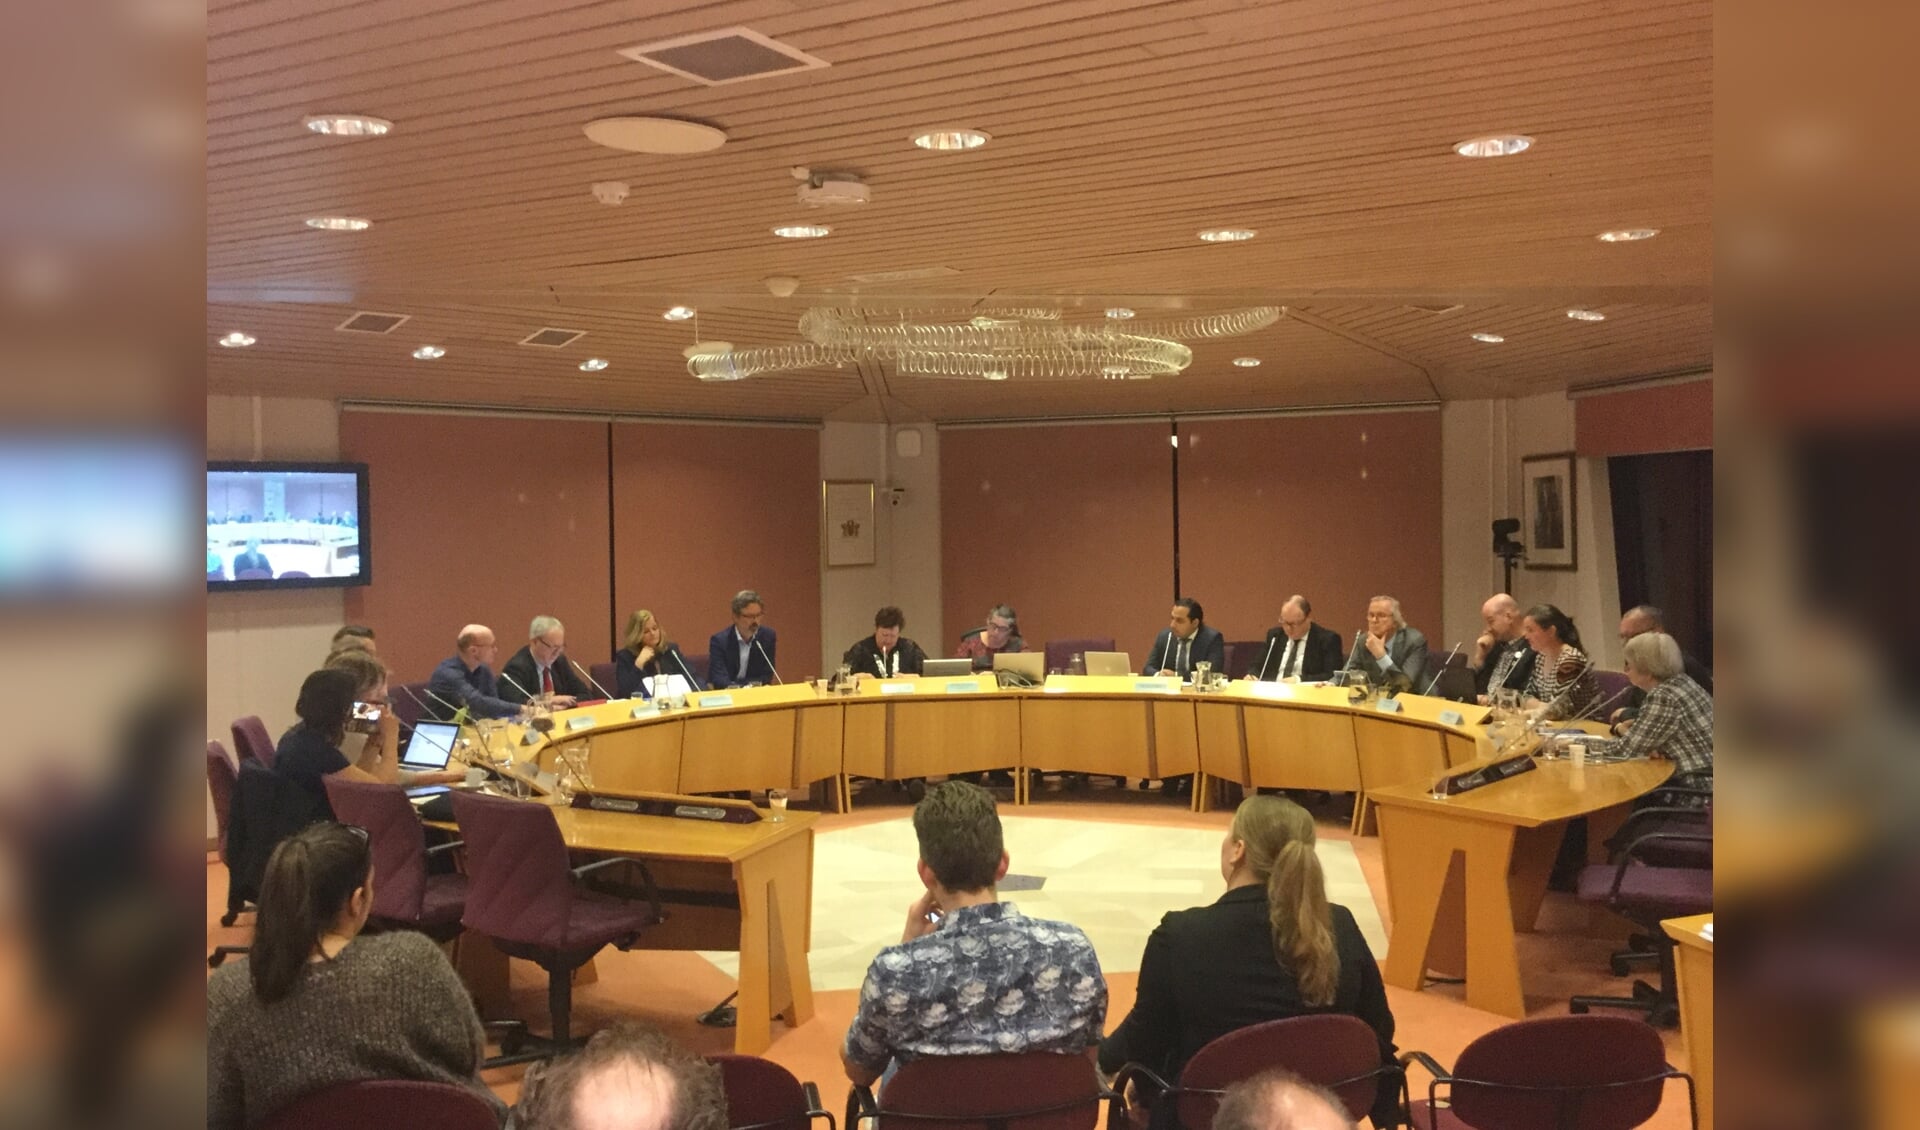 In de raadsvergadering van 27 februari heeft de gemeenteraad van Waterland een besluit genomen over de bestuurlijke toekomst.  De gemeenteraad kiest in meerderheid voor zelfstandigheid.